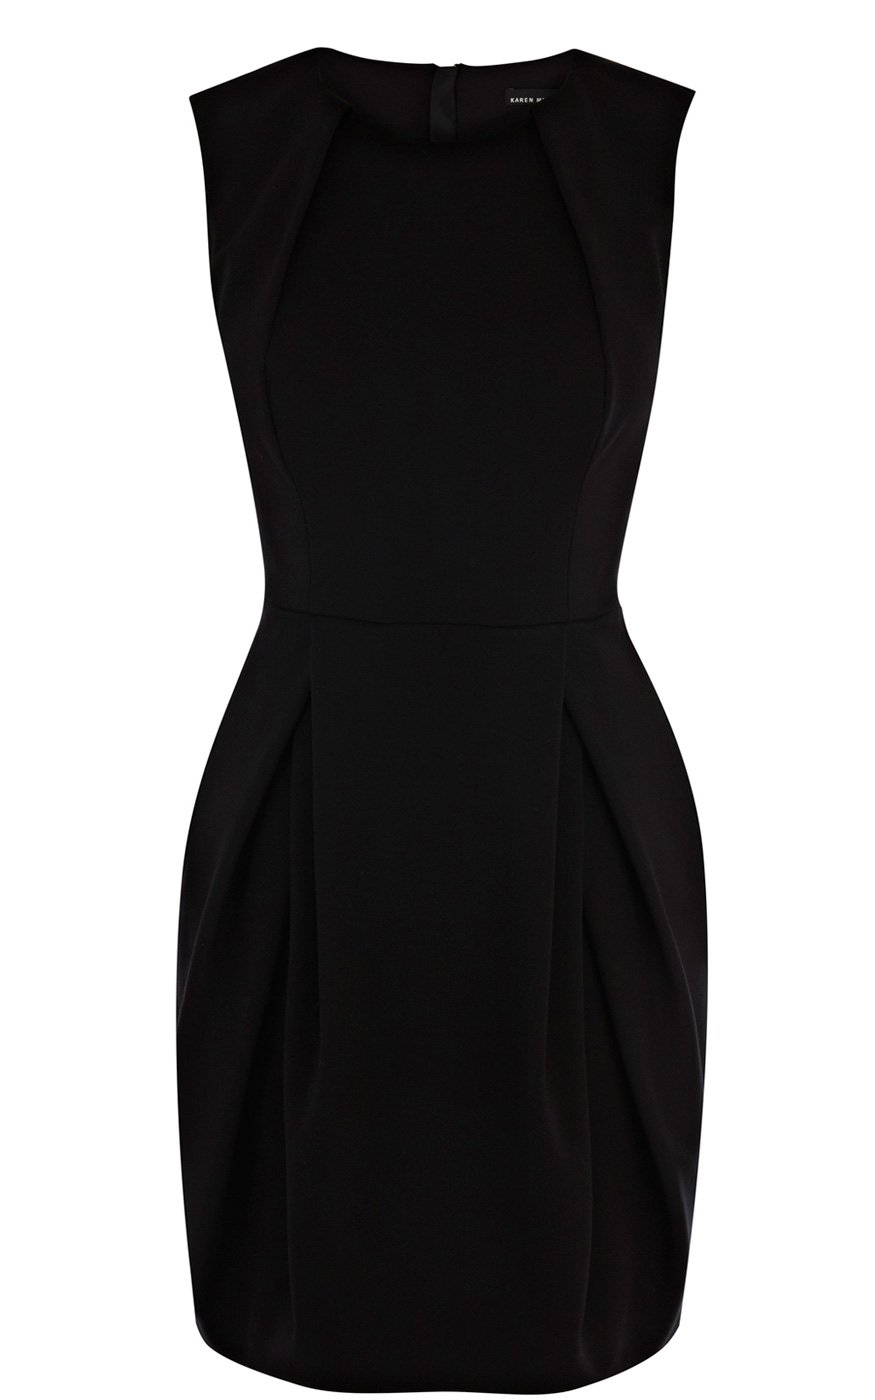 Karen millen Jersey Bubble Dress in Black | Lyst